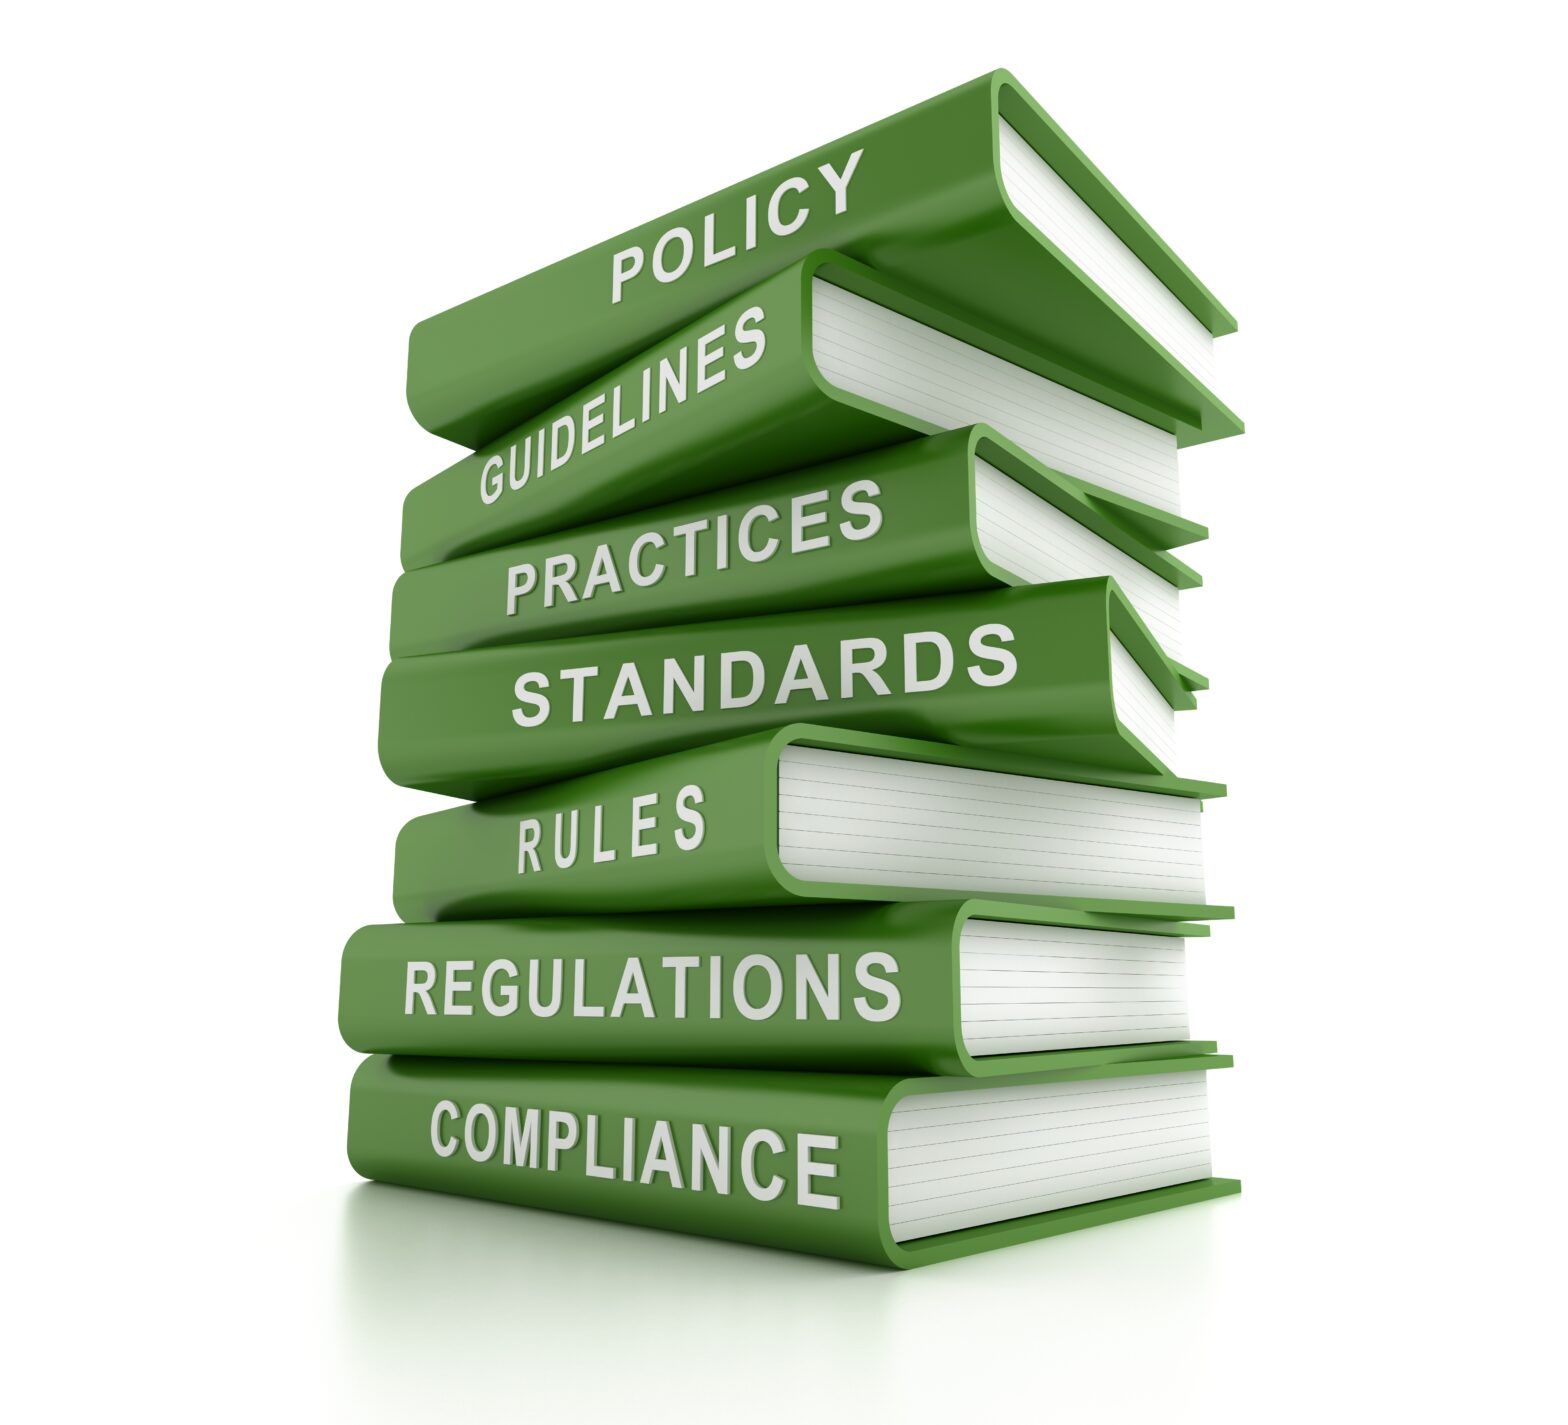 APAC regulation roundup: Green labels and greenwashing